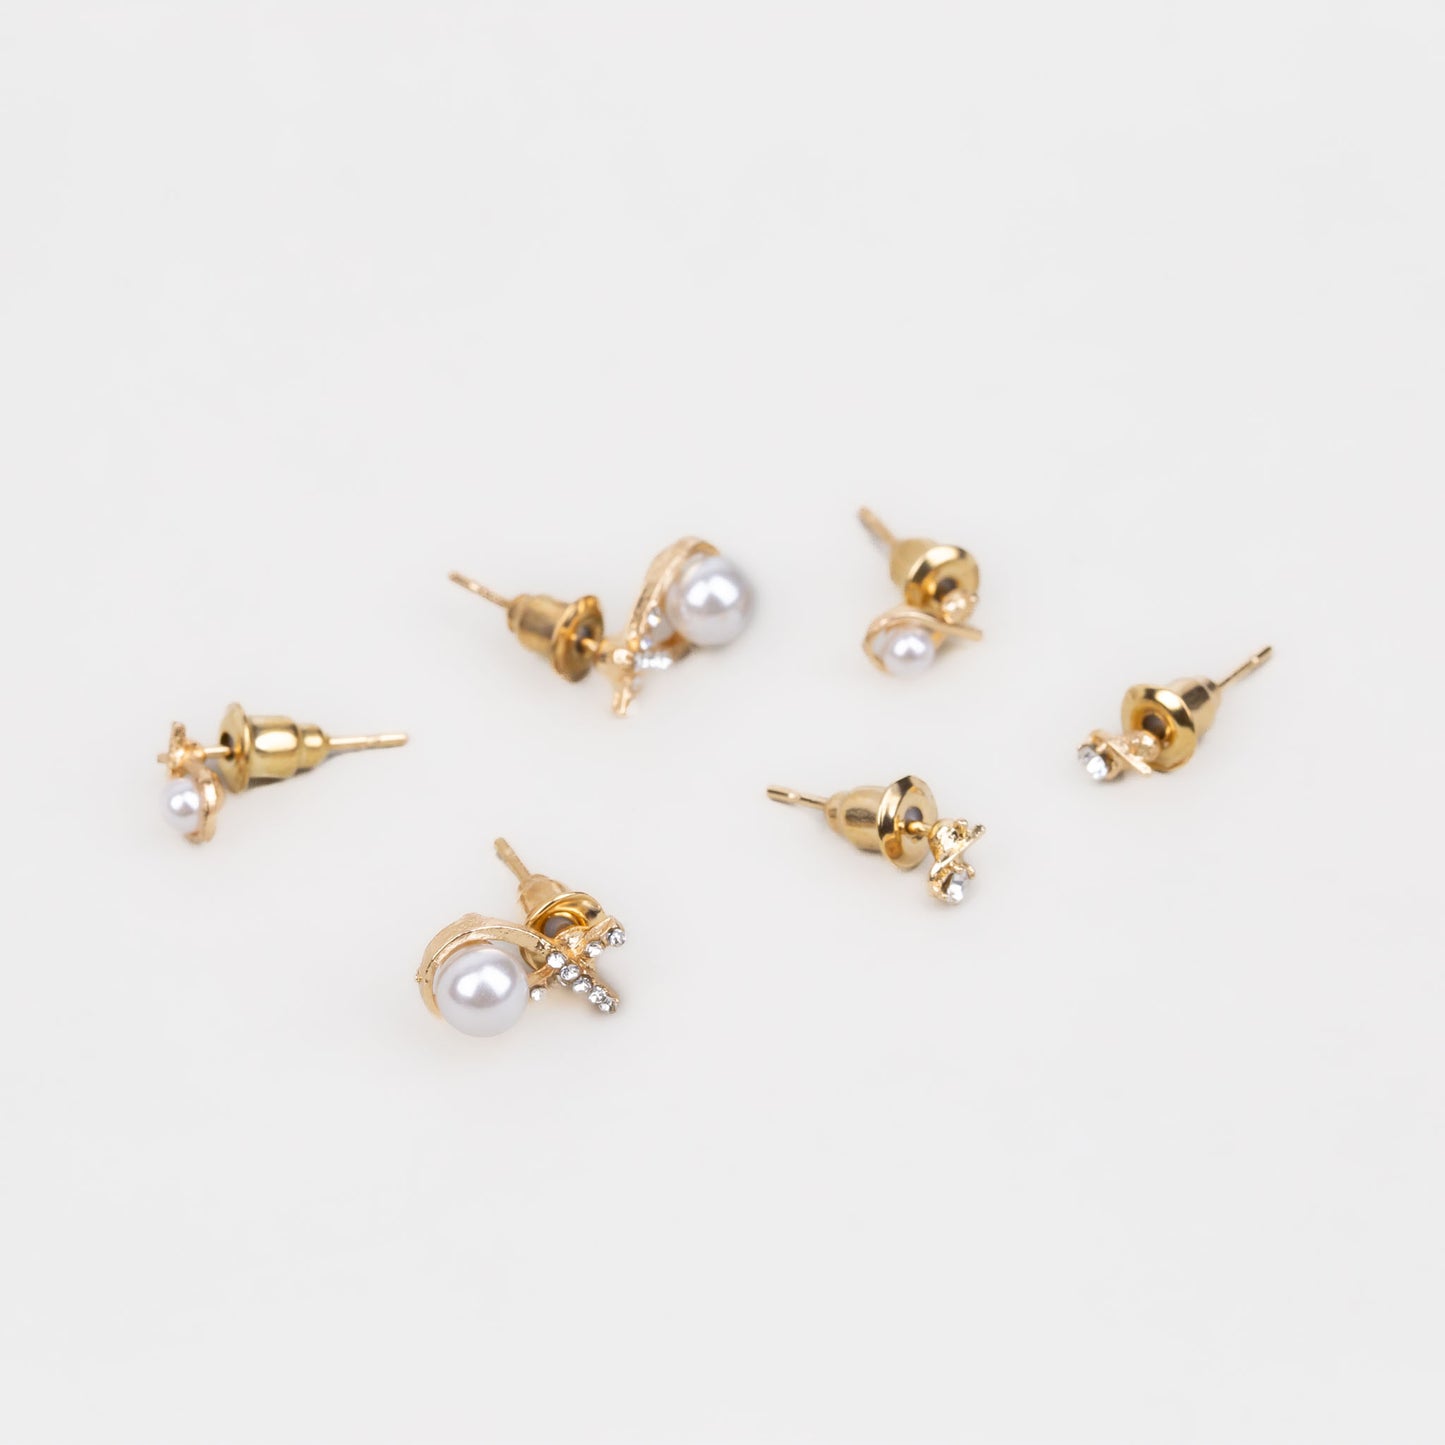 Cercei mici discreți cu formă împletită, ștrasuri și perle mici, set 3 perechi - Auriu